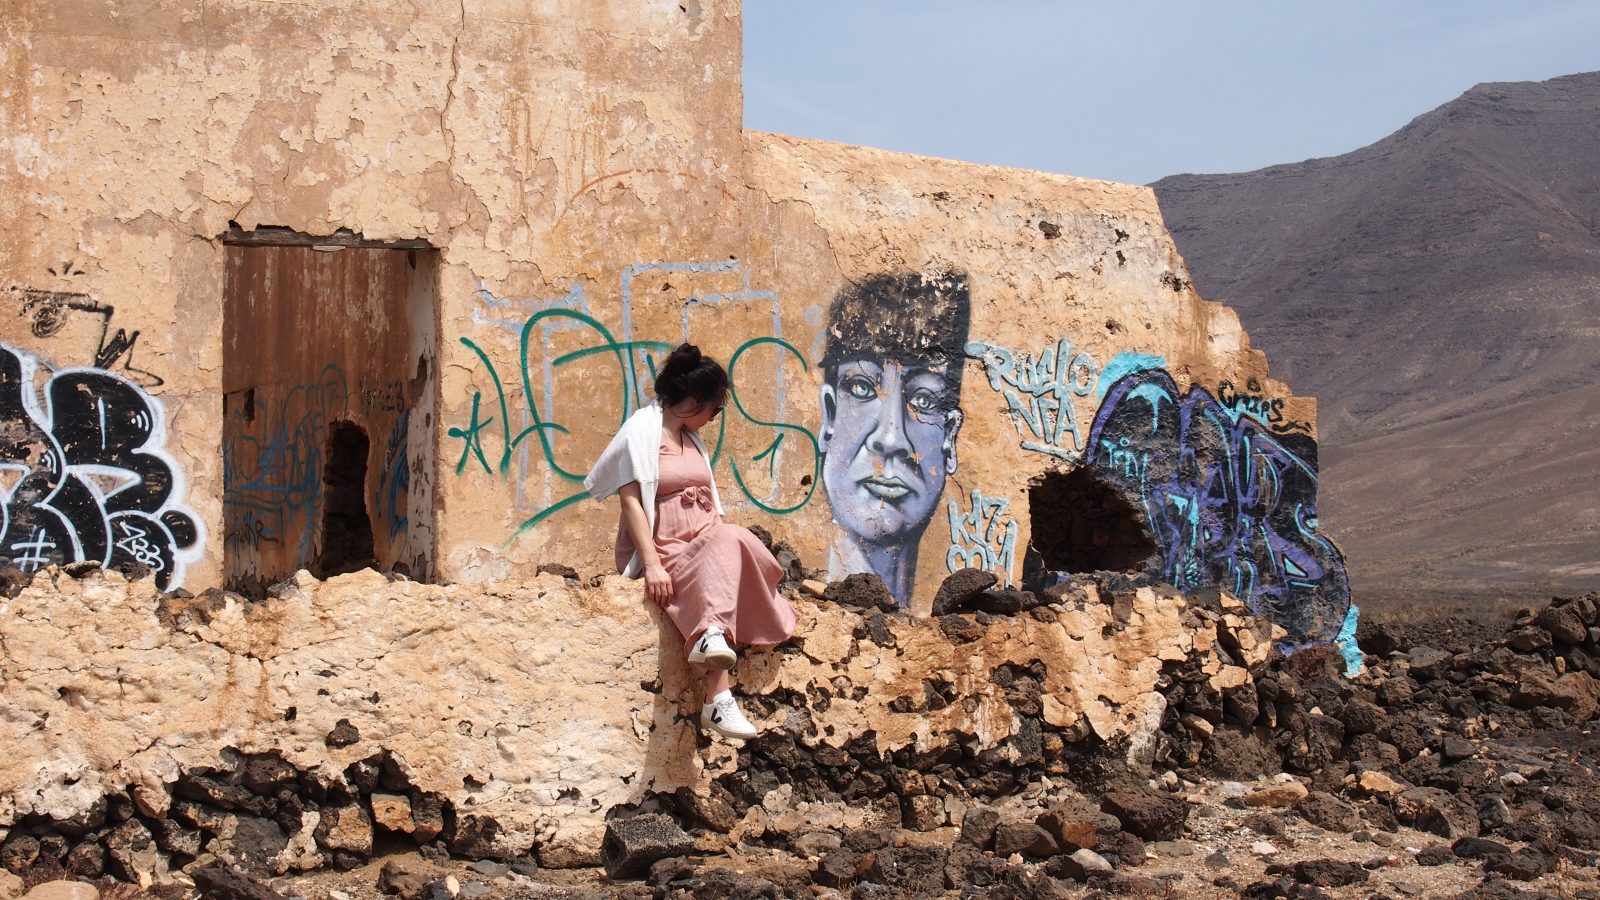 Chacha prend la pose devant un bâtiment décoré par des graffitis